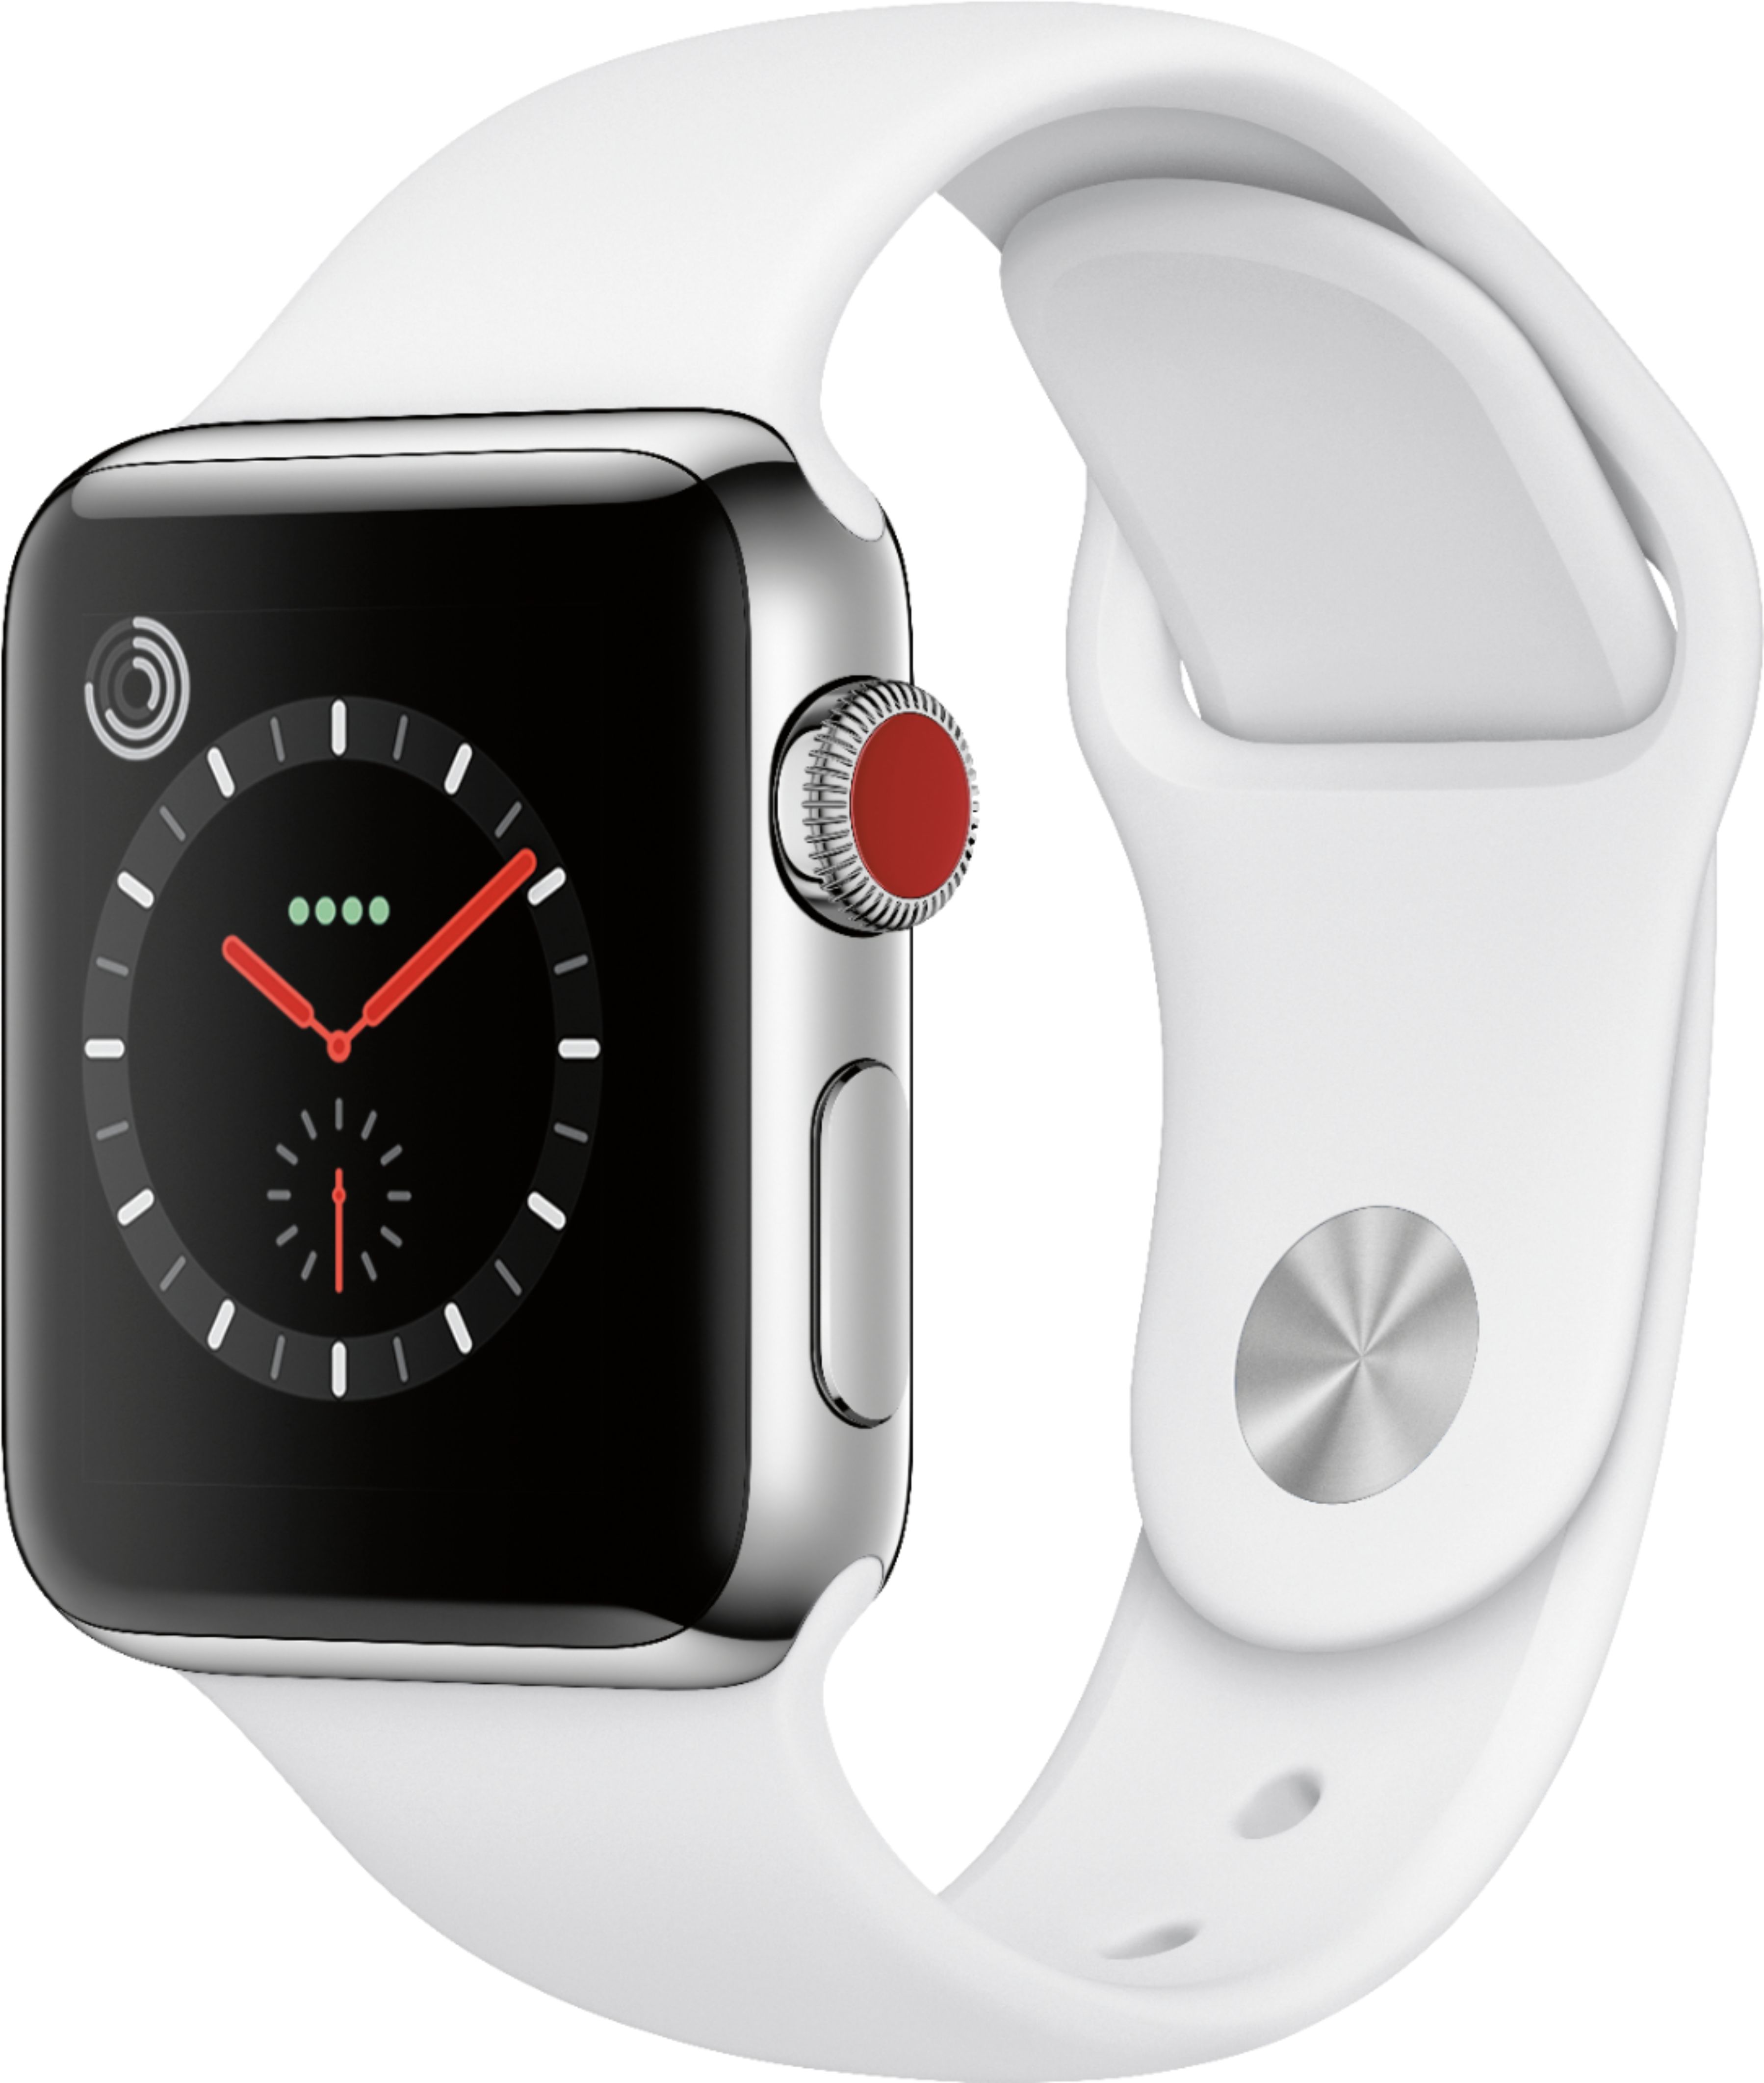 充電器など付属品はつきますかApple Watch series3 本体 - 腕時計 